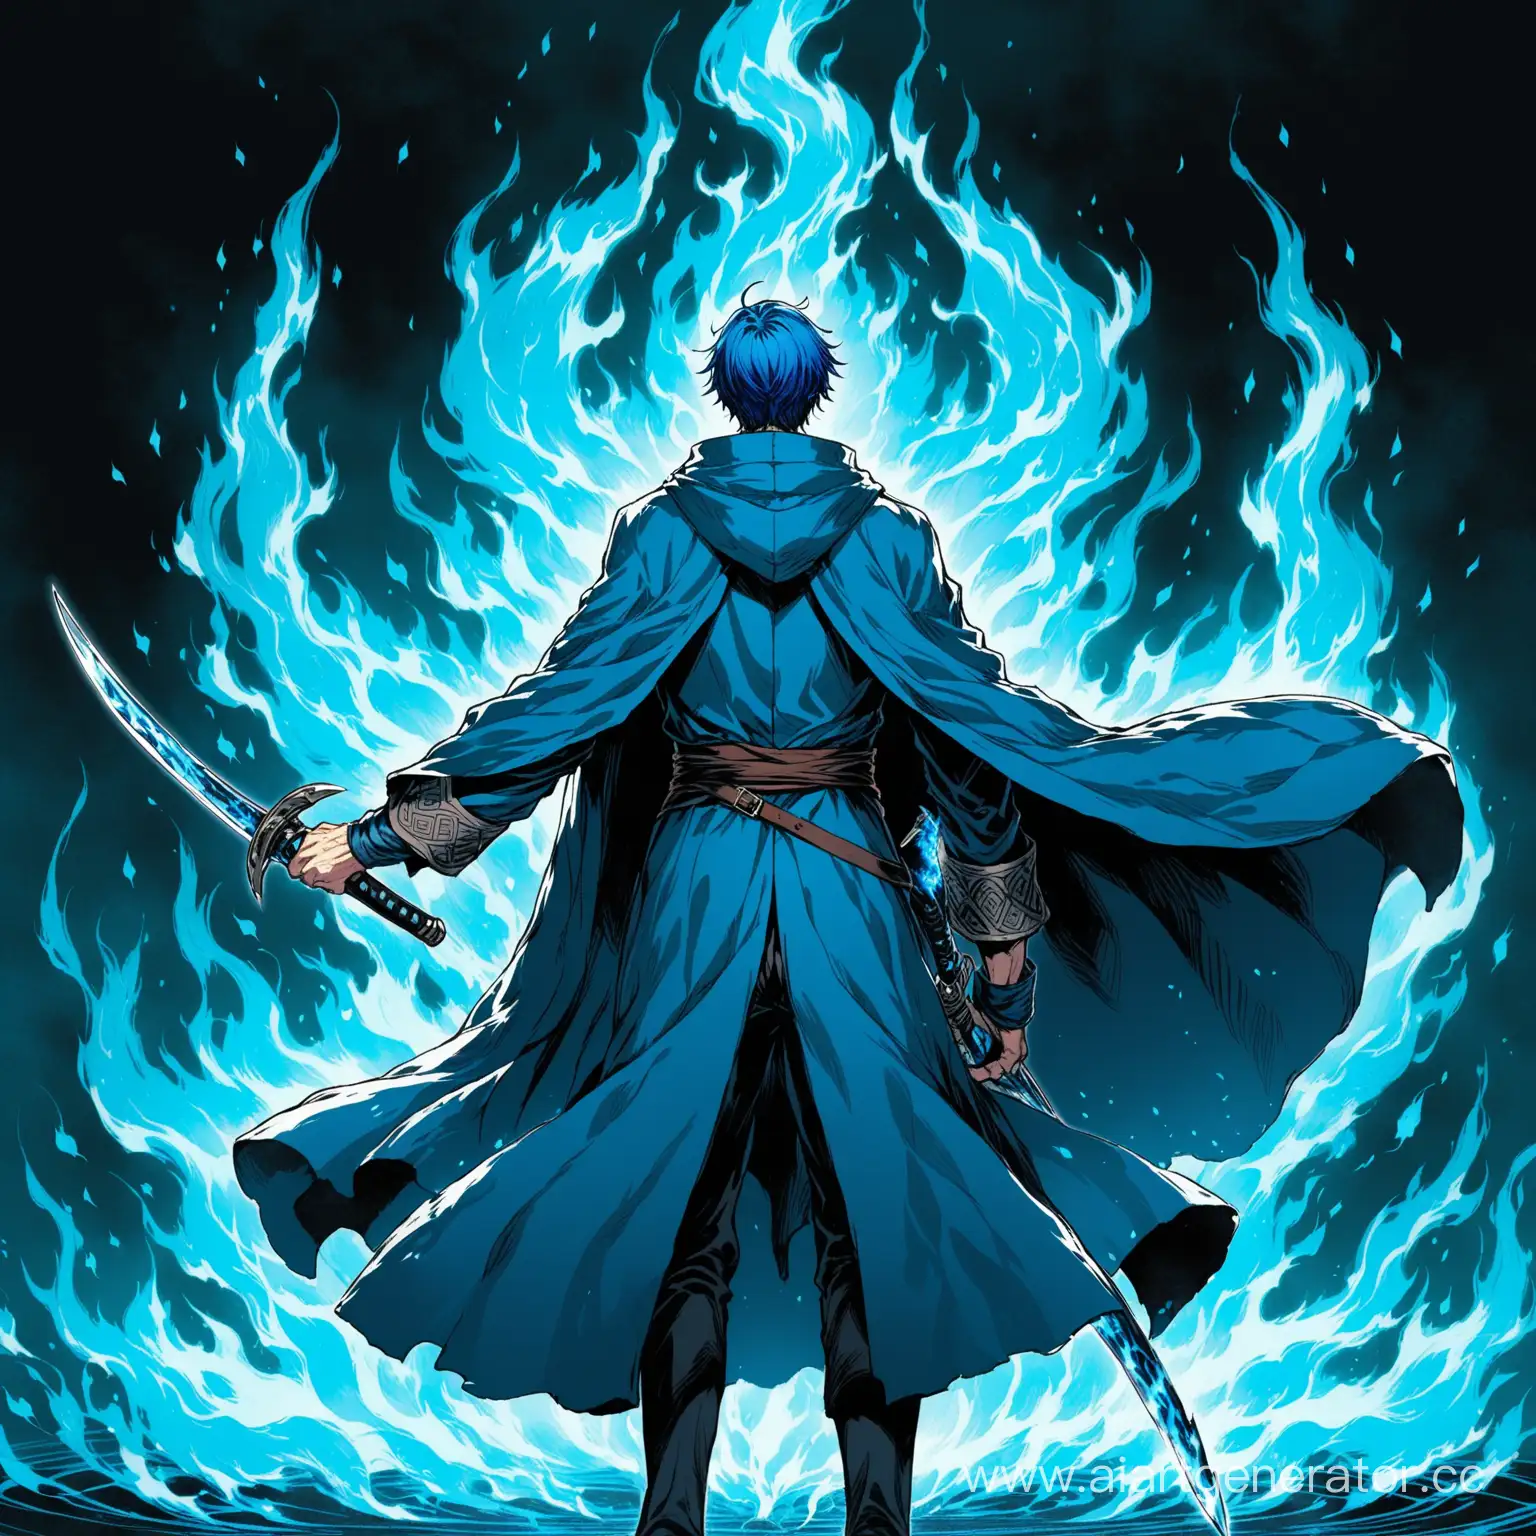 Мужчина с синими волосами одетый в синий плащ за спиной которого два клинка, персонаж также манипулирует синим огнем